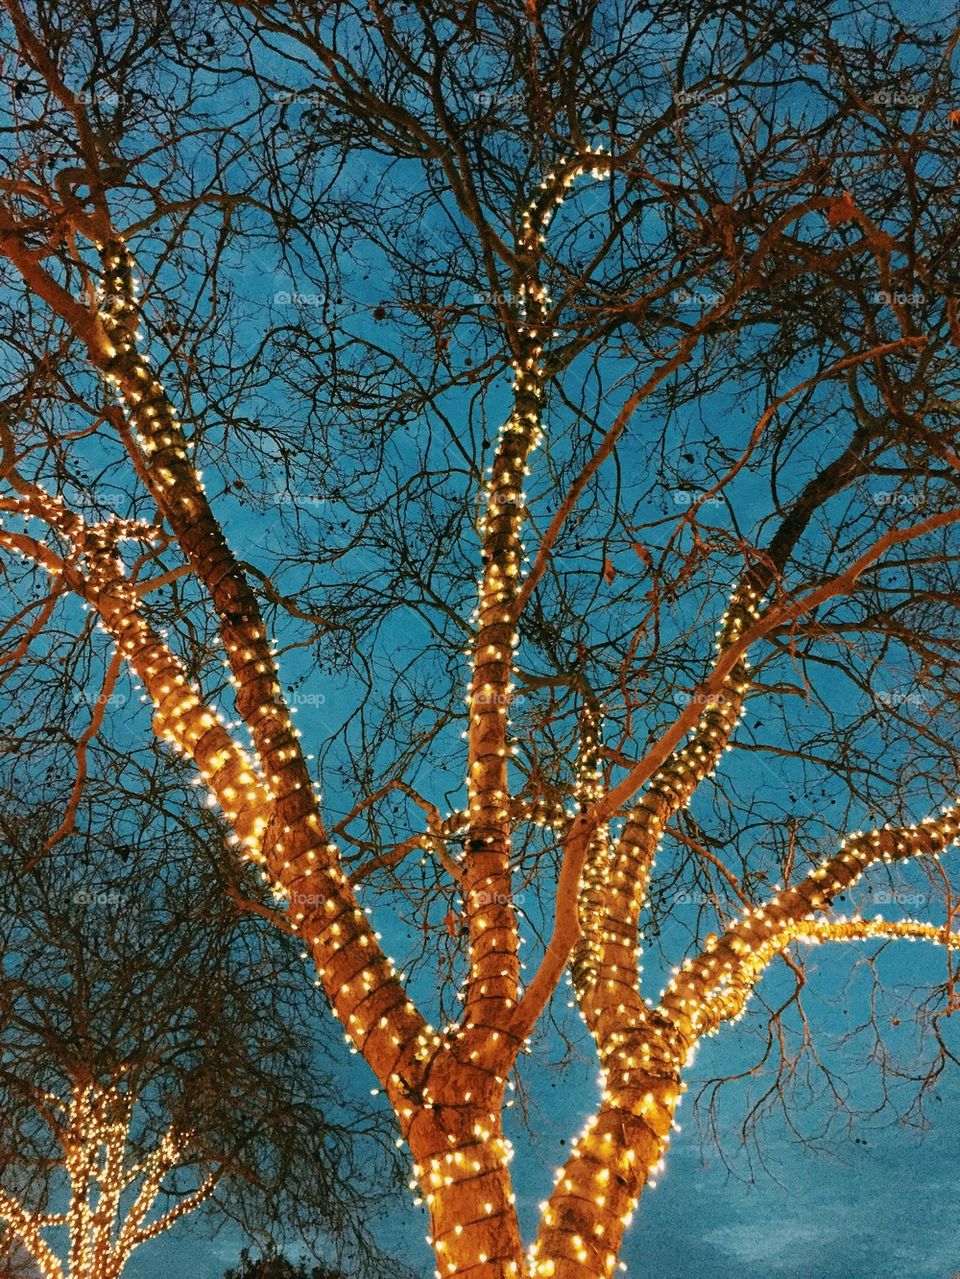 Tree lights